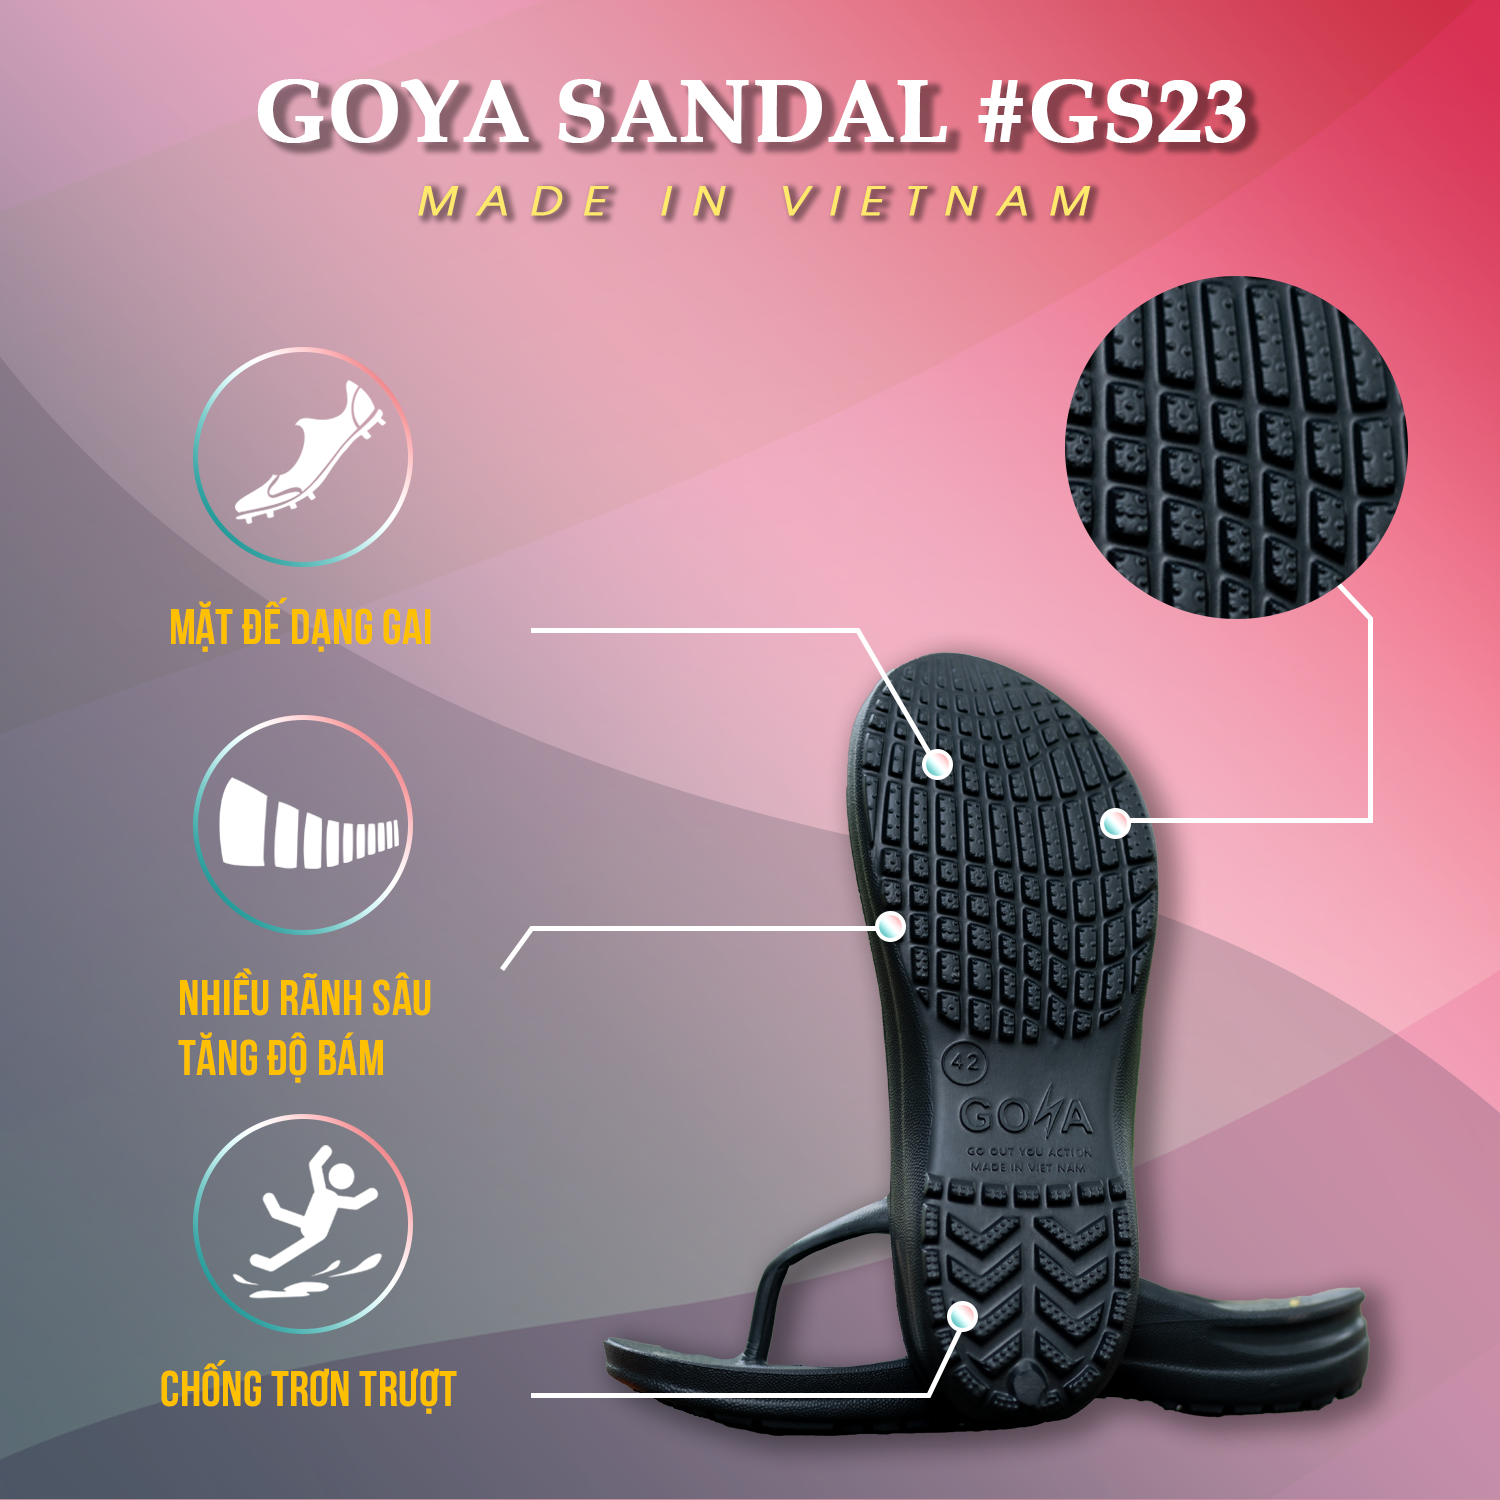 [HOT] Dép Thể Thao Cao Cấp Goya Sandal GS23 - Màu Đen